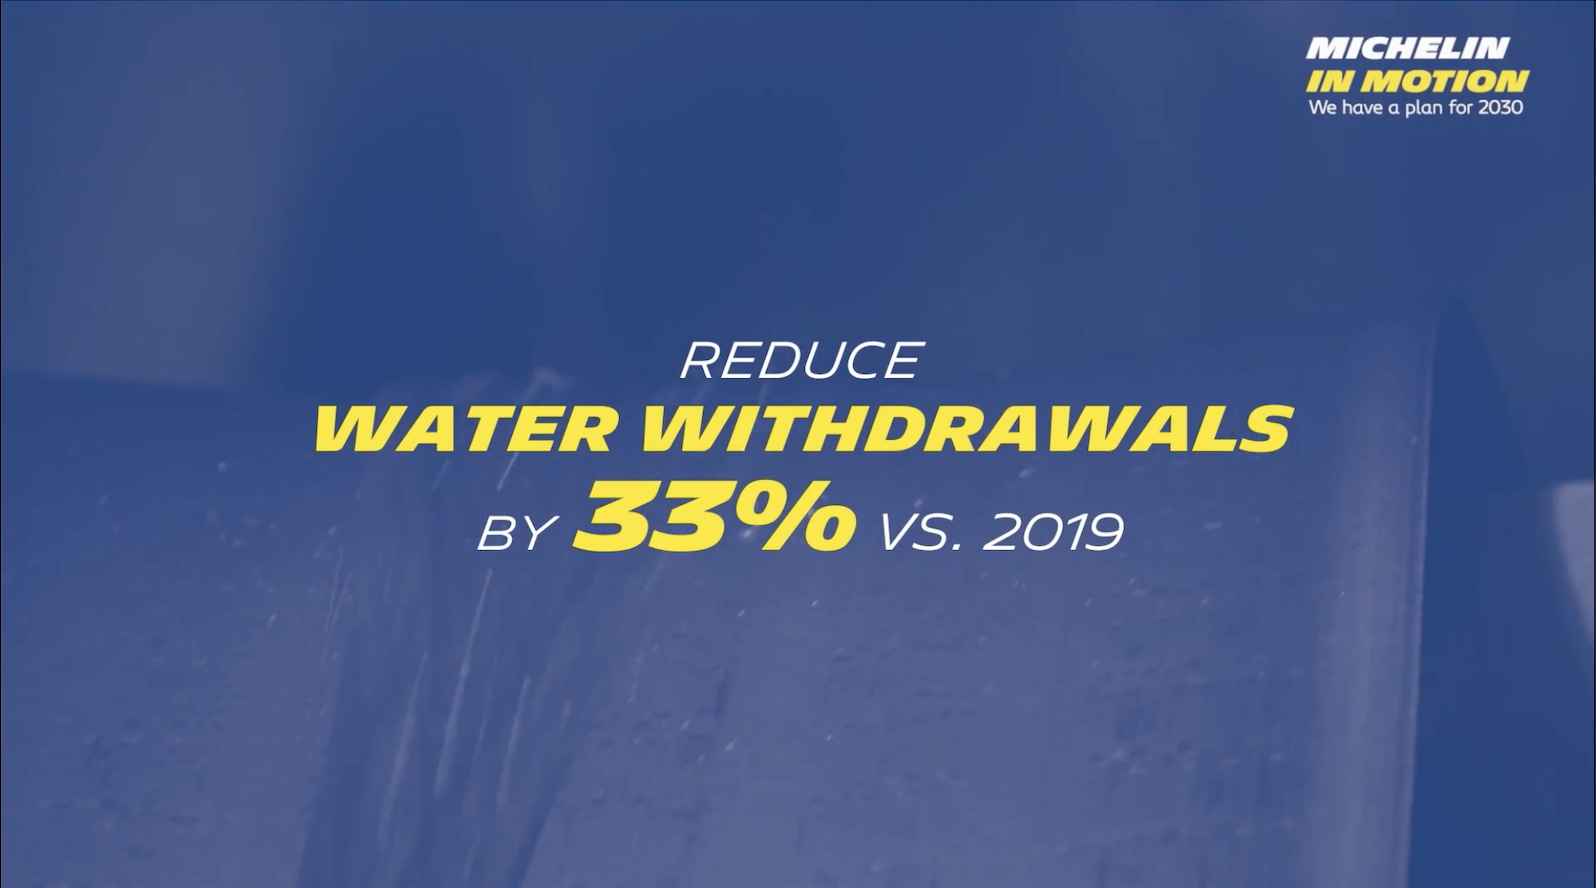 與2019年相比，減少33%的水用量